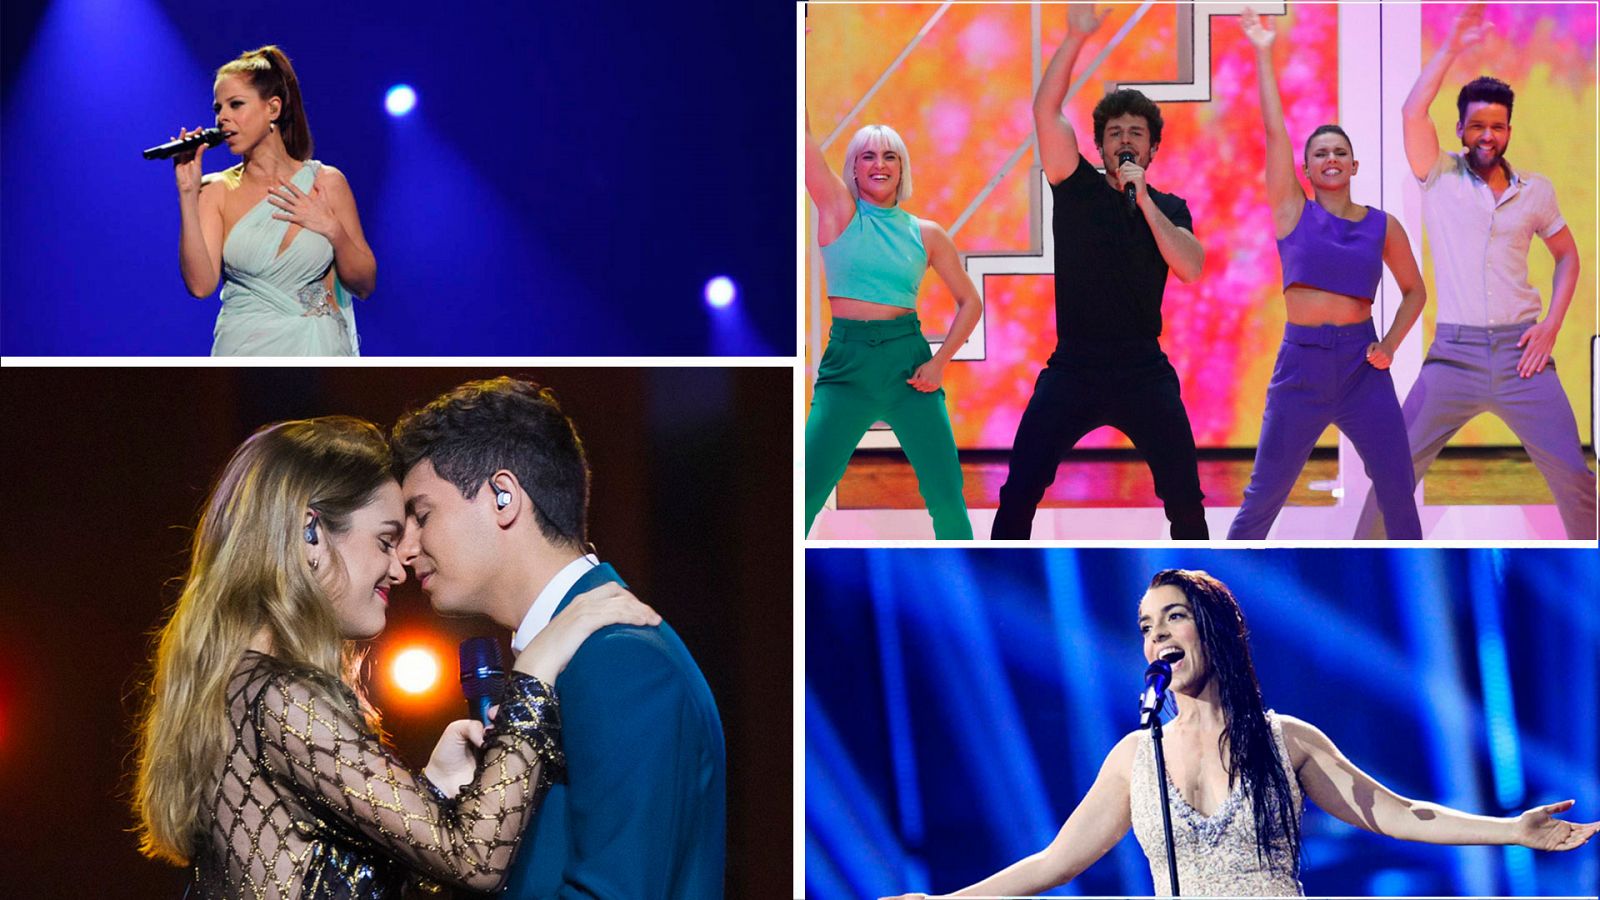 Algunos de nuestros representantes en anteriores ediciones de Eurovisión: Pastora Soler, Miki Núñez, Alfred y Amaia y Ruth Lorenzo